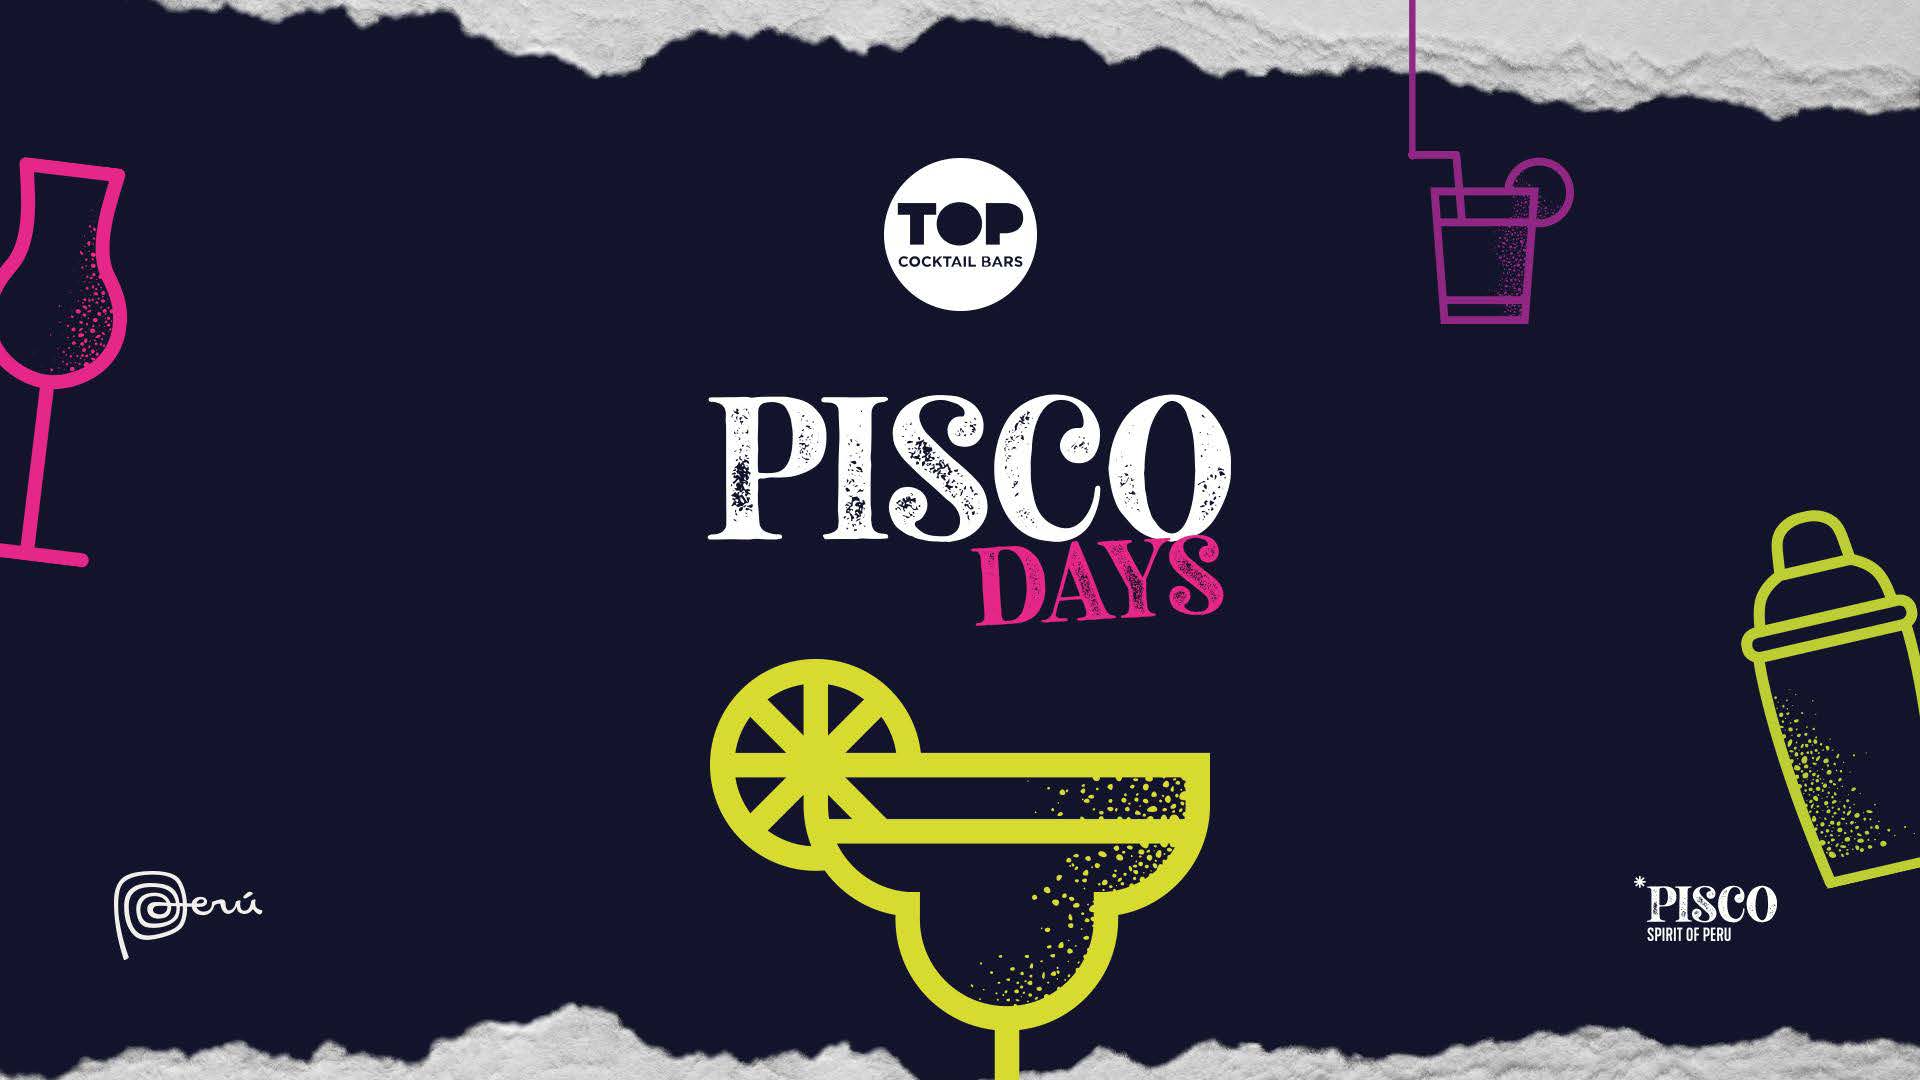 Pisco Days se celebrará del 08 al 17 de Julio en diferentes ciudades españolas